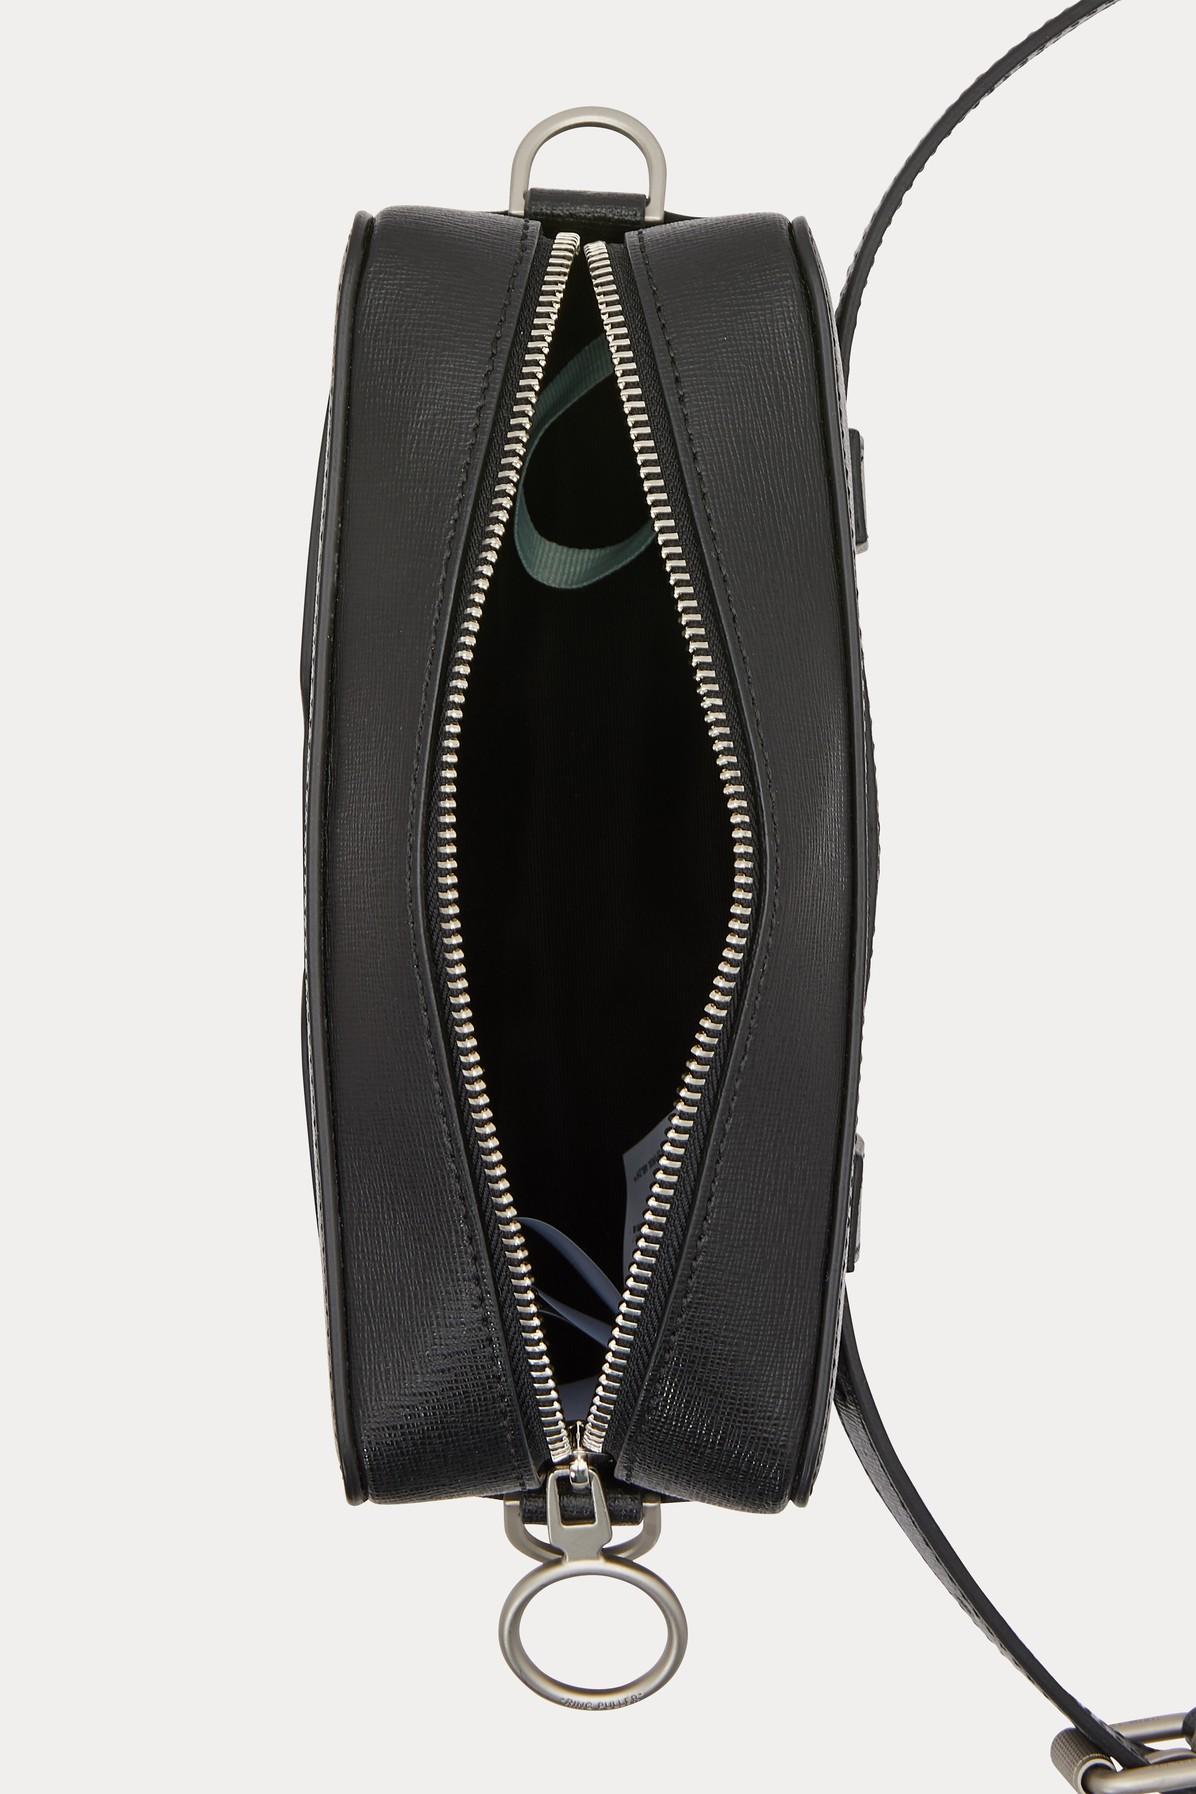 Shoulder bags Off-White - Sculpture black leather squared shoulder bag -  OWNA011E184230721001